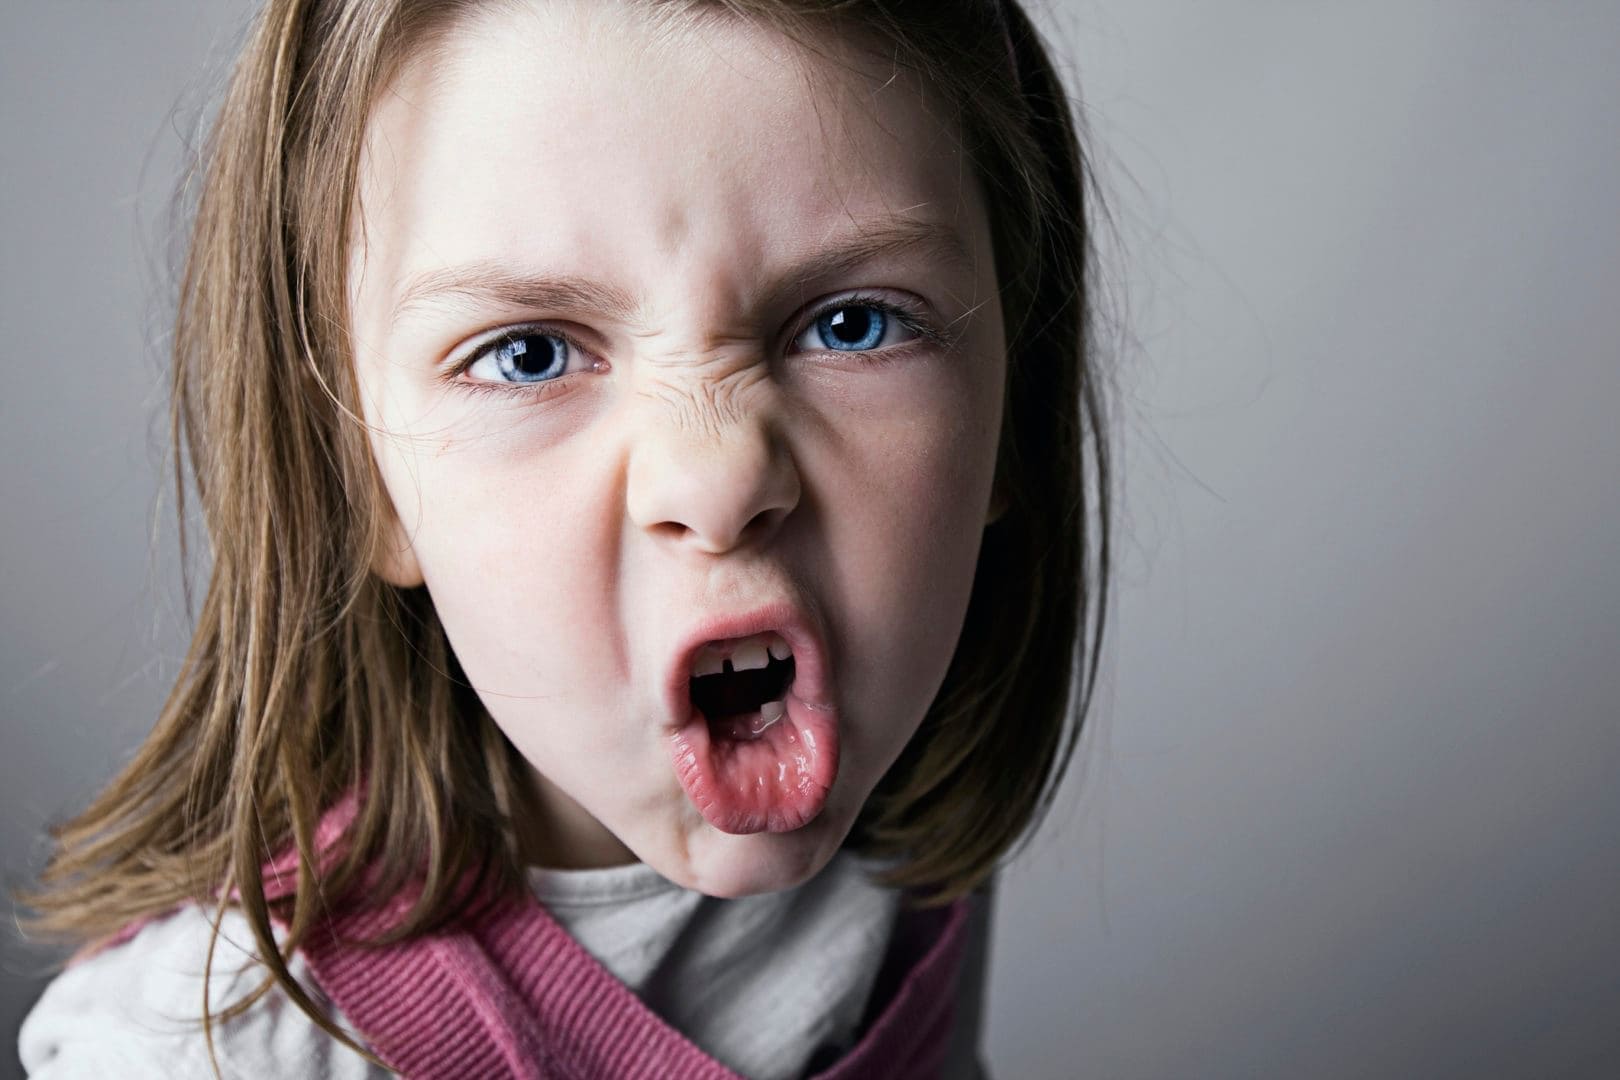 3 steps to stop aggressive behavior in kids